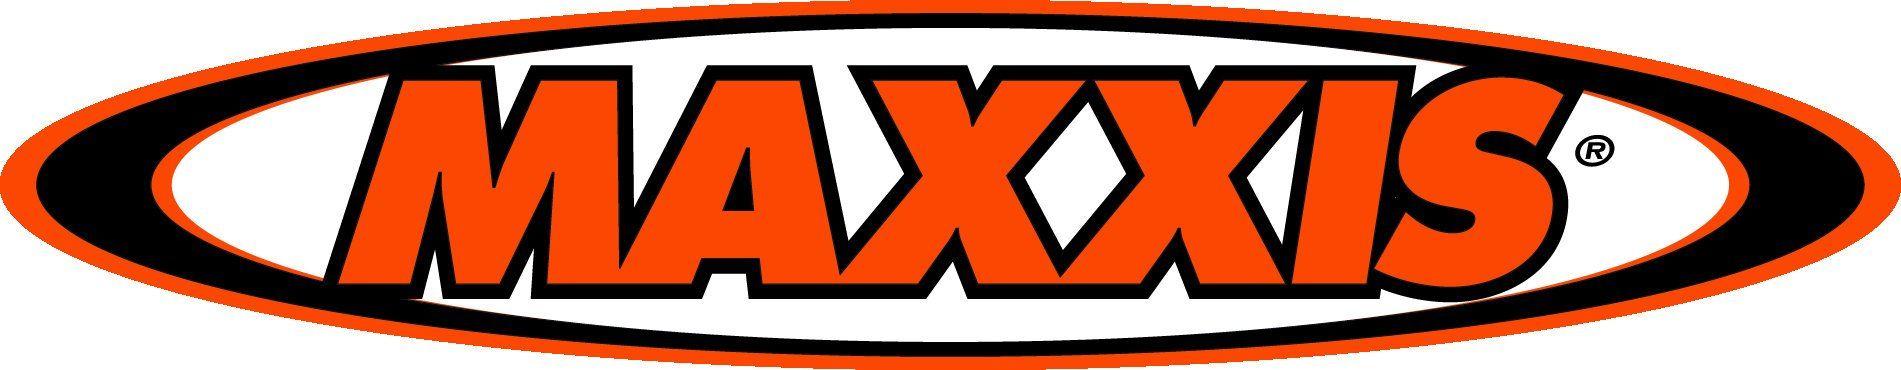 Maxxis Logo - MAXXIS Vector logo | Etsy